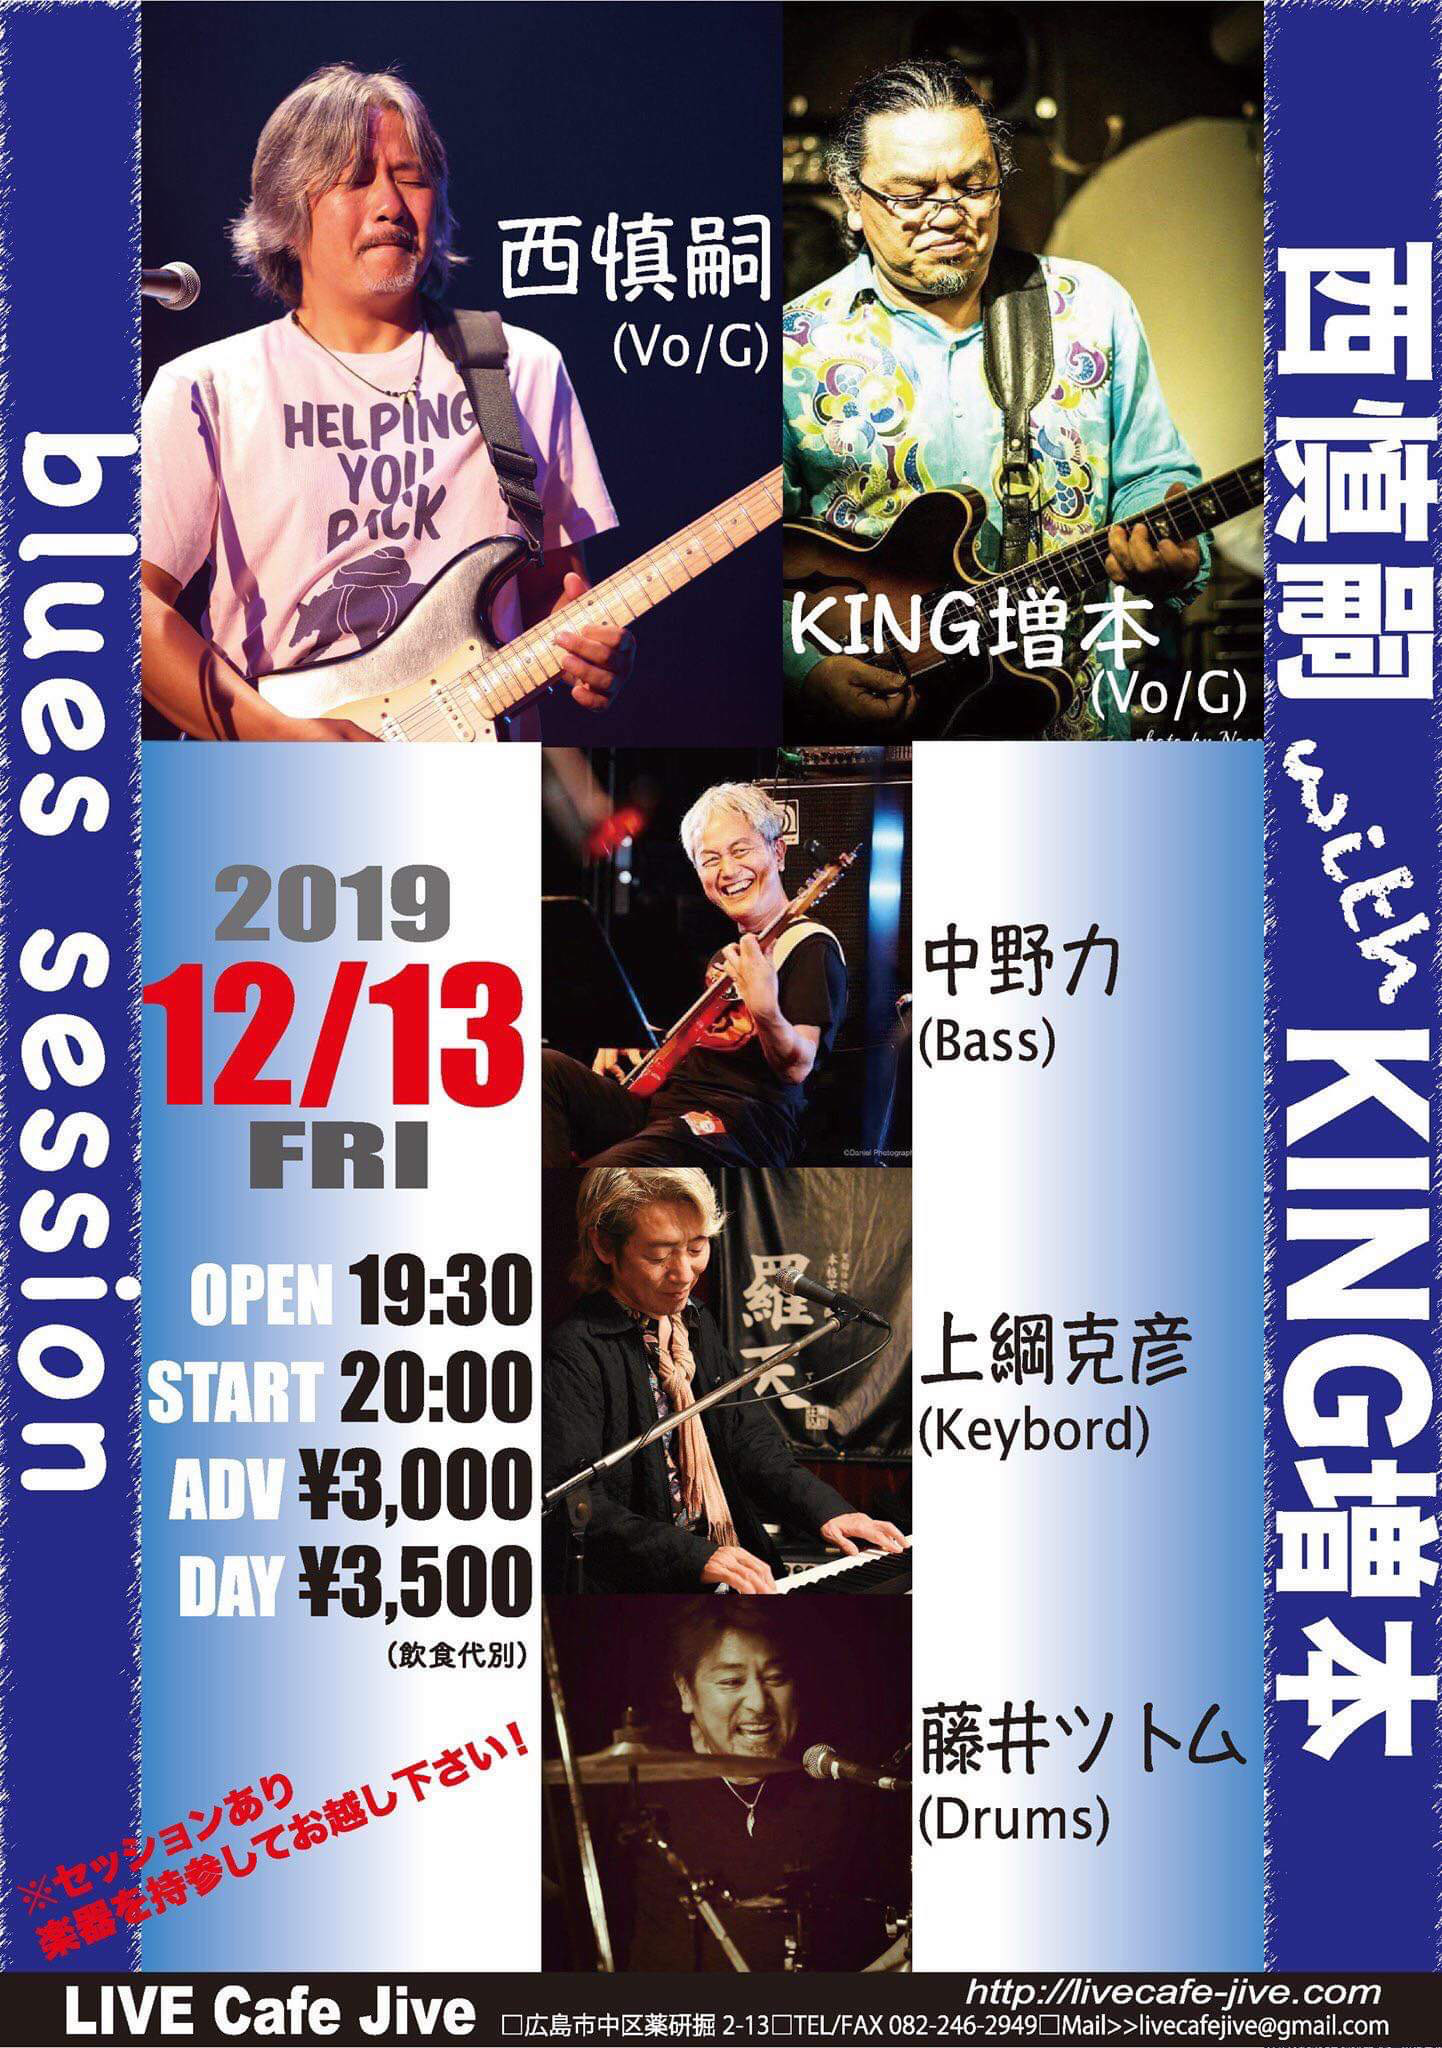 西 慎嗣 with KING増本 blues session